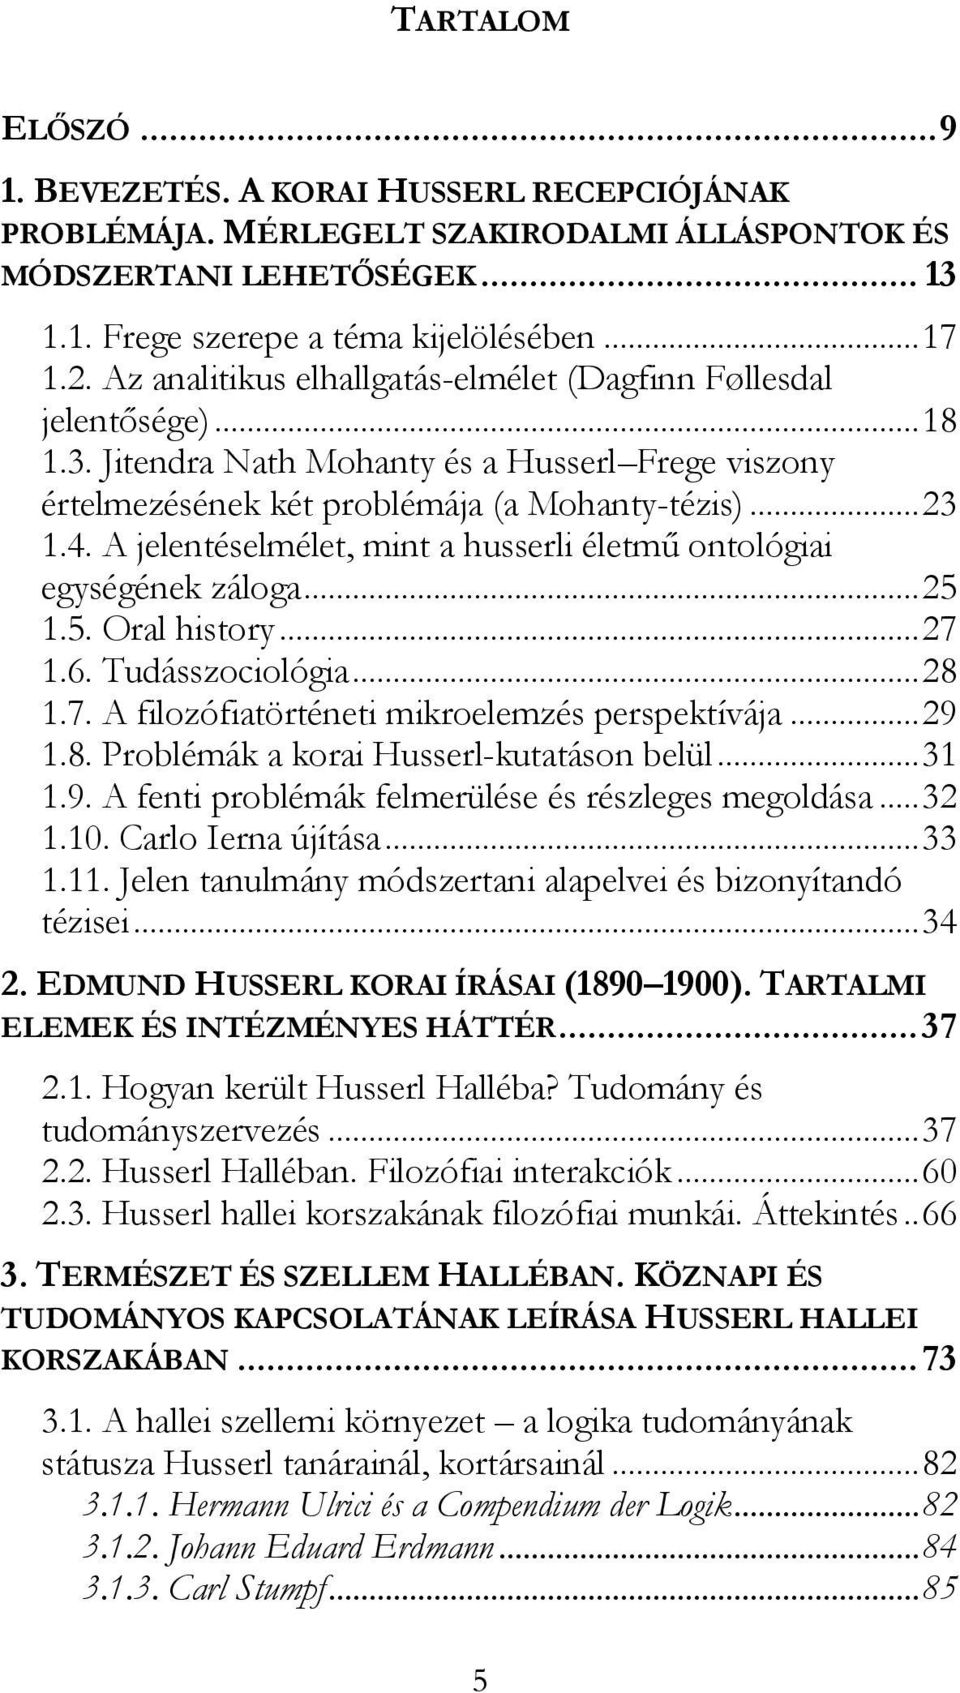 A jelentéselmélet, mint a husserli életmű ontológiai egységének záloga... 25 1.5. Oral history... 27 1.6. Tudásszociológia... 28 1.7. A filozófiatörténeti mikroelemzés perspektívája... 29 1.8. Problémák a korai Husserl-kutatáson belül.